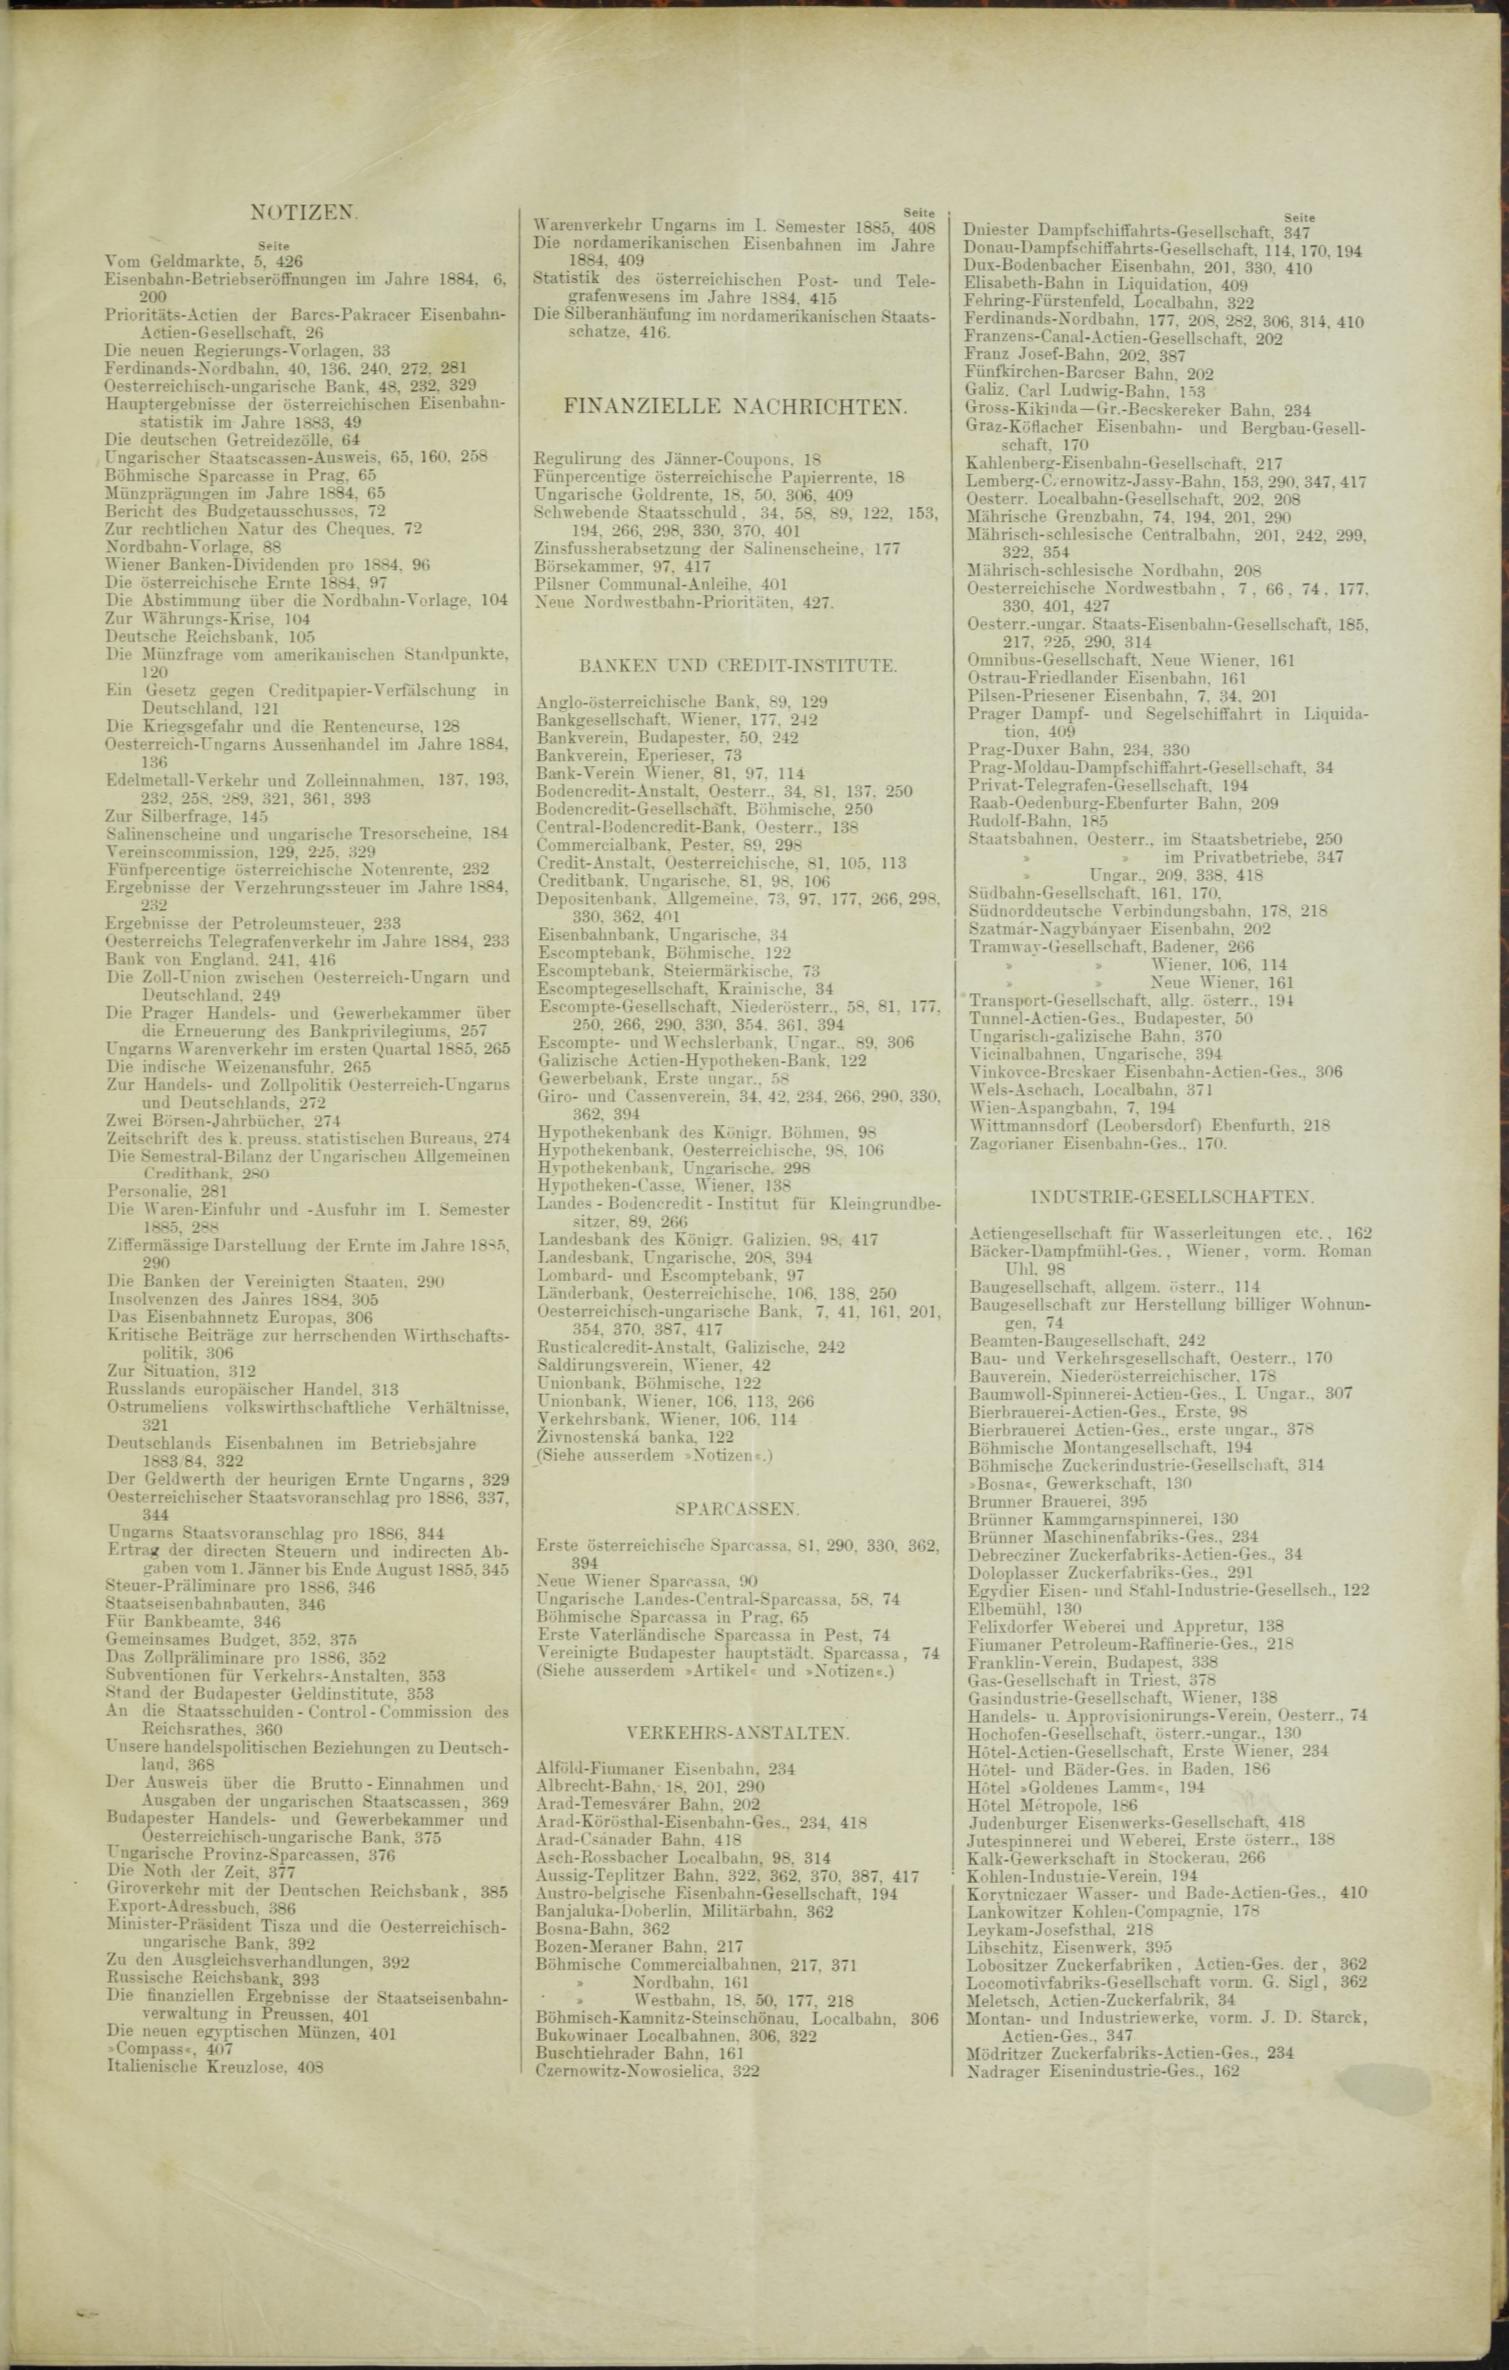 Der Tresor 16.07.1885 - Seite 11